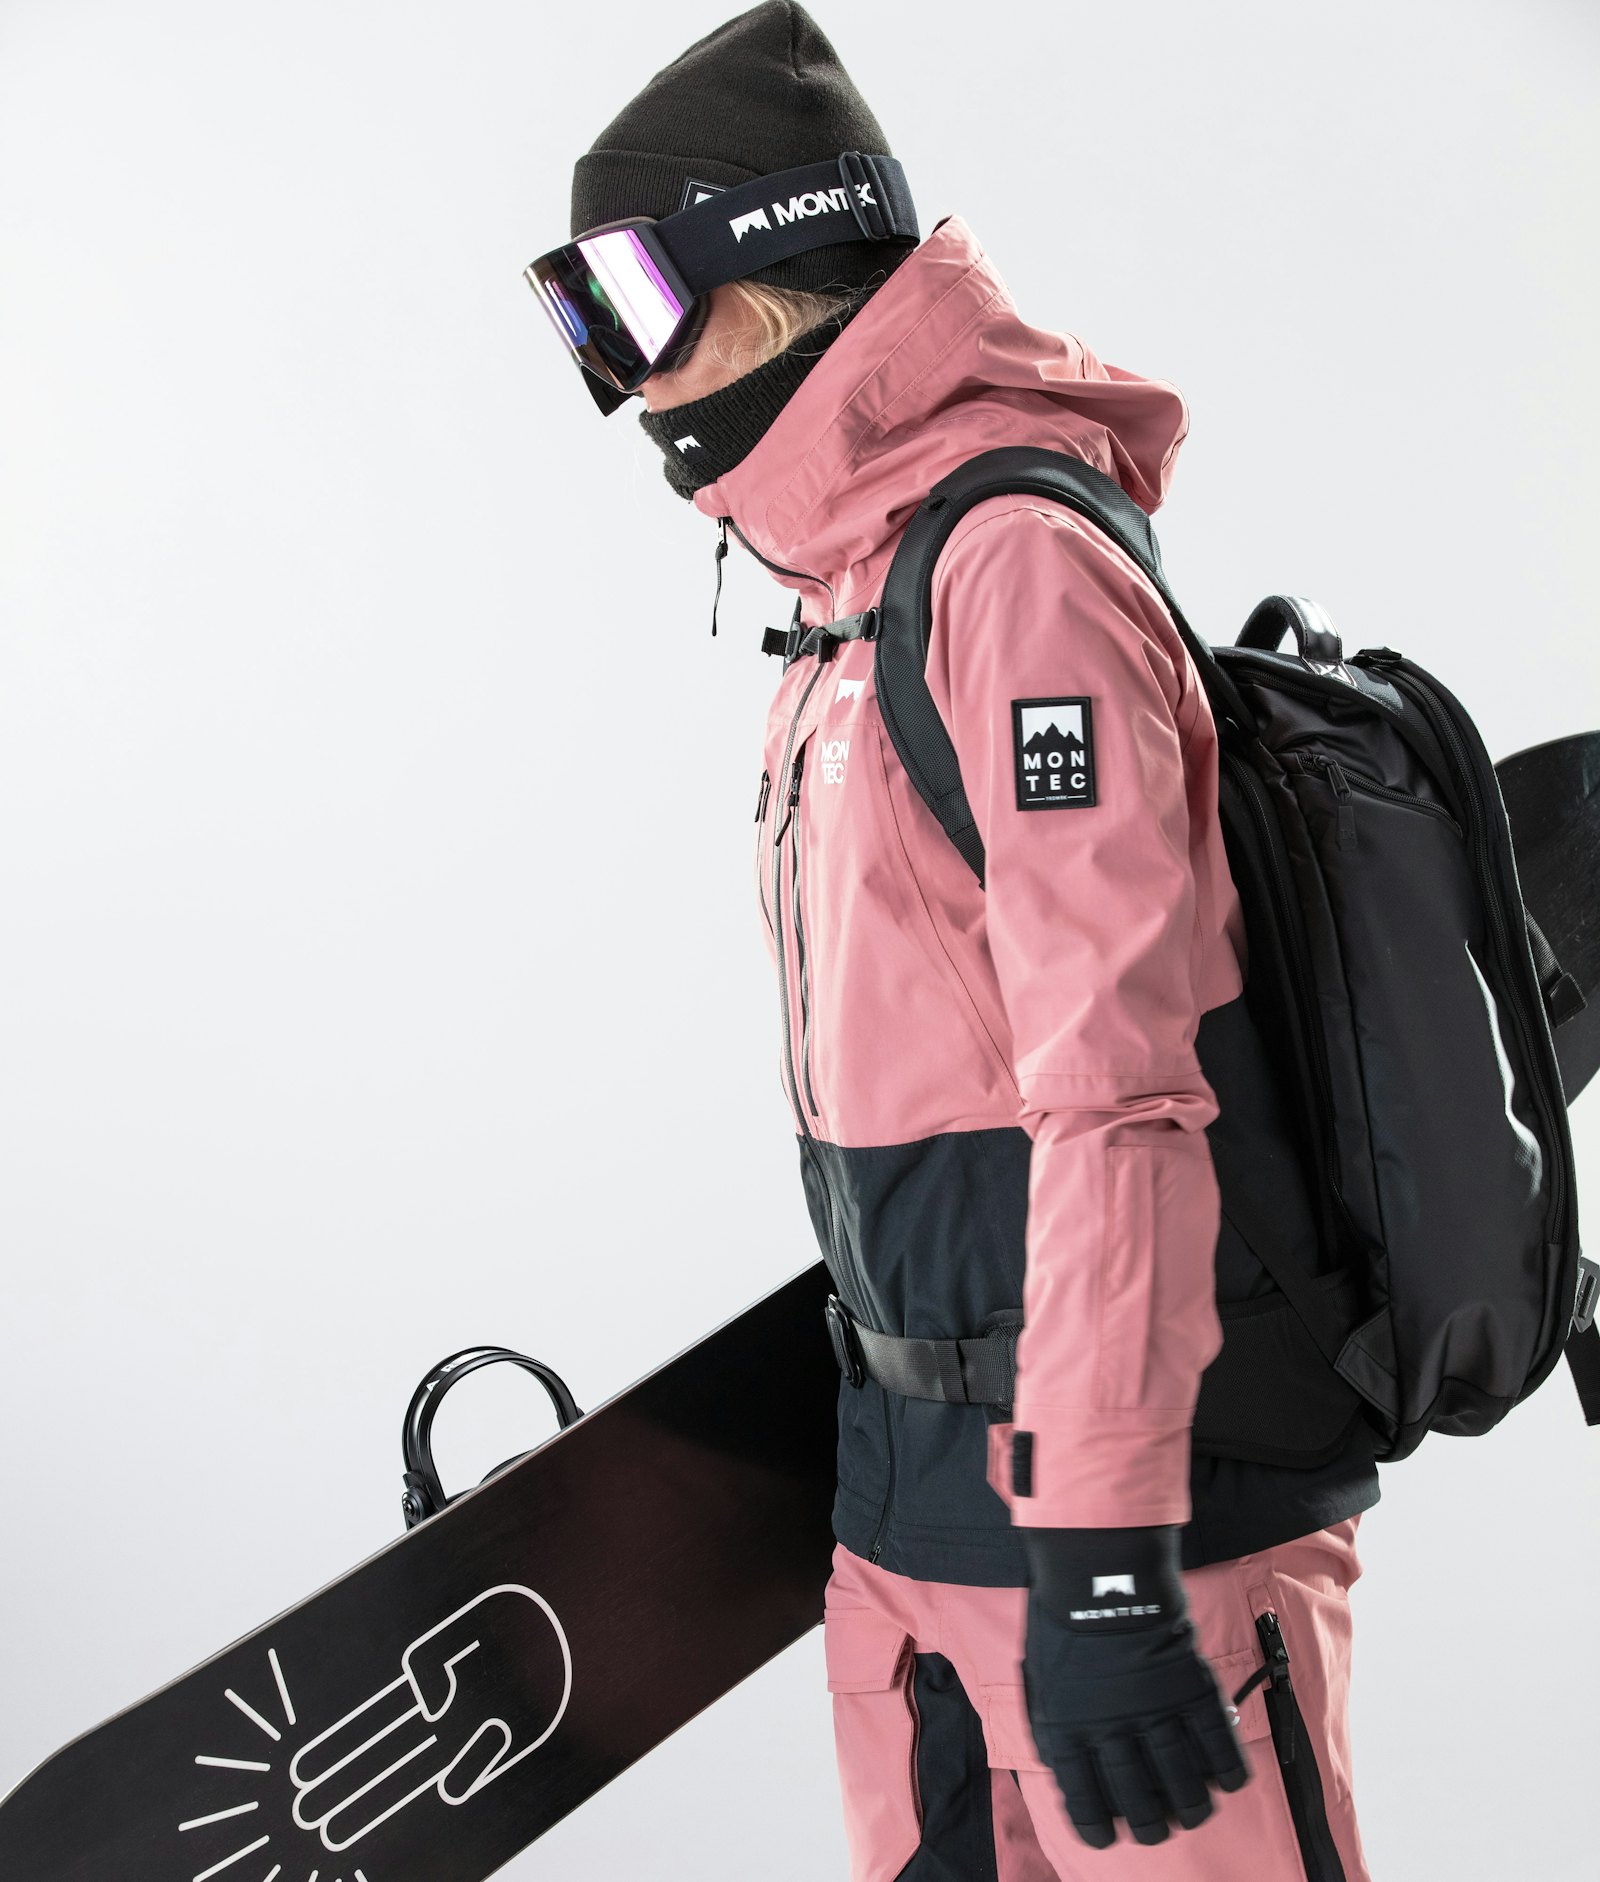 Moss W 2020 Snowboardjacke Damen Pink/Black